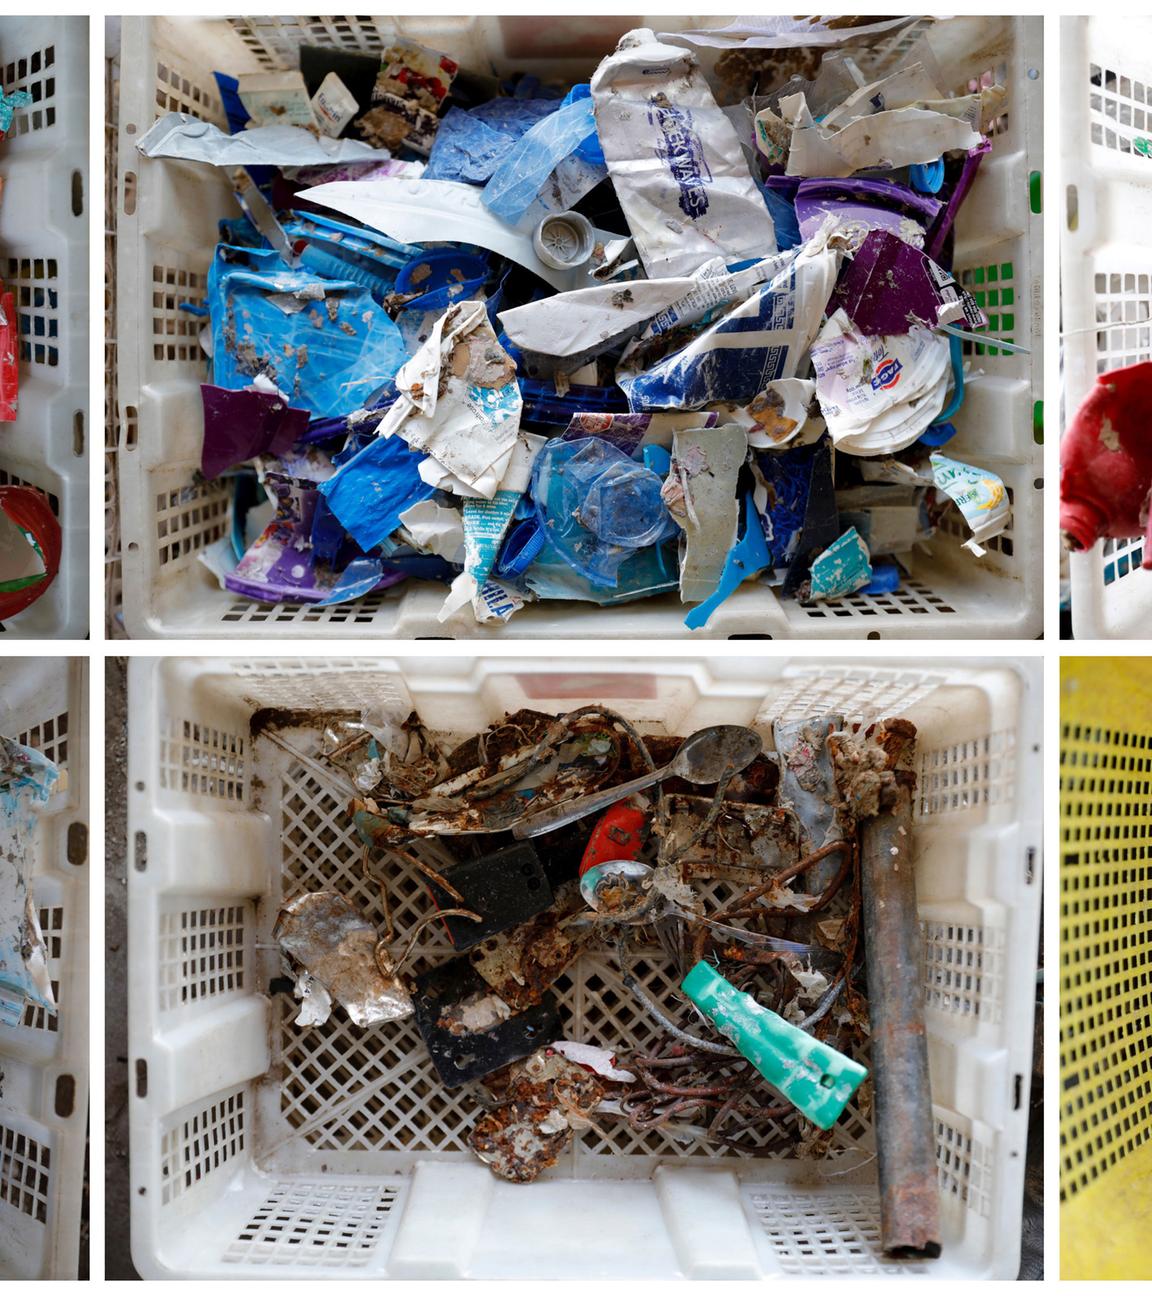 "Amerikas Plastik-Lüge - Profit statt Recycling": Bildmontage aus sechs quadratischen Einzelbildern mit bunten Kleinteilen und Verpackungsmaterial: Es zeigt sortiertes Plastik in getrennten Behältern.